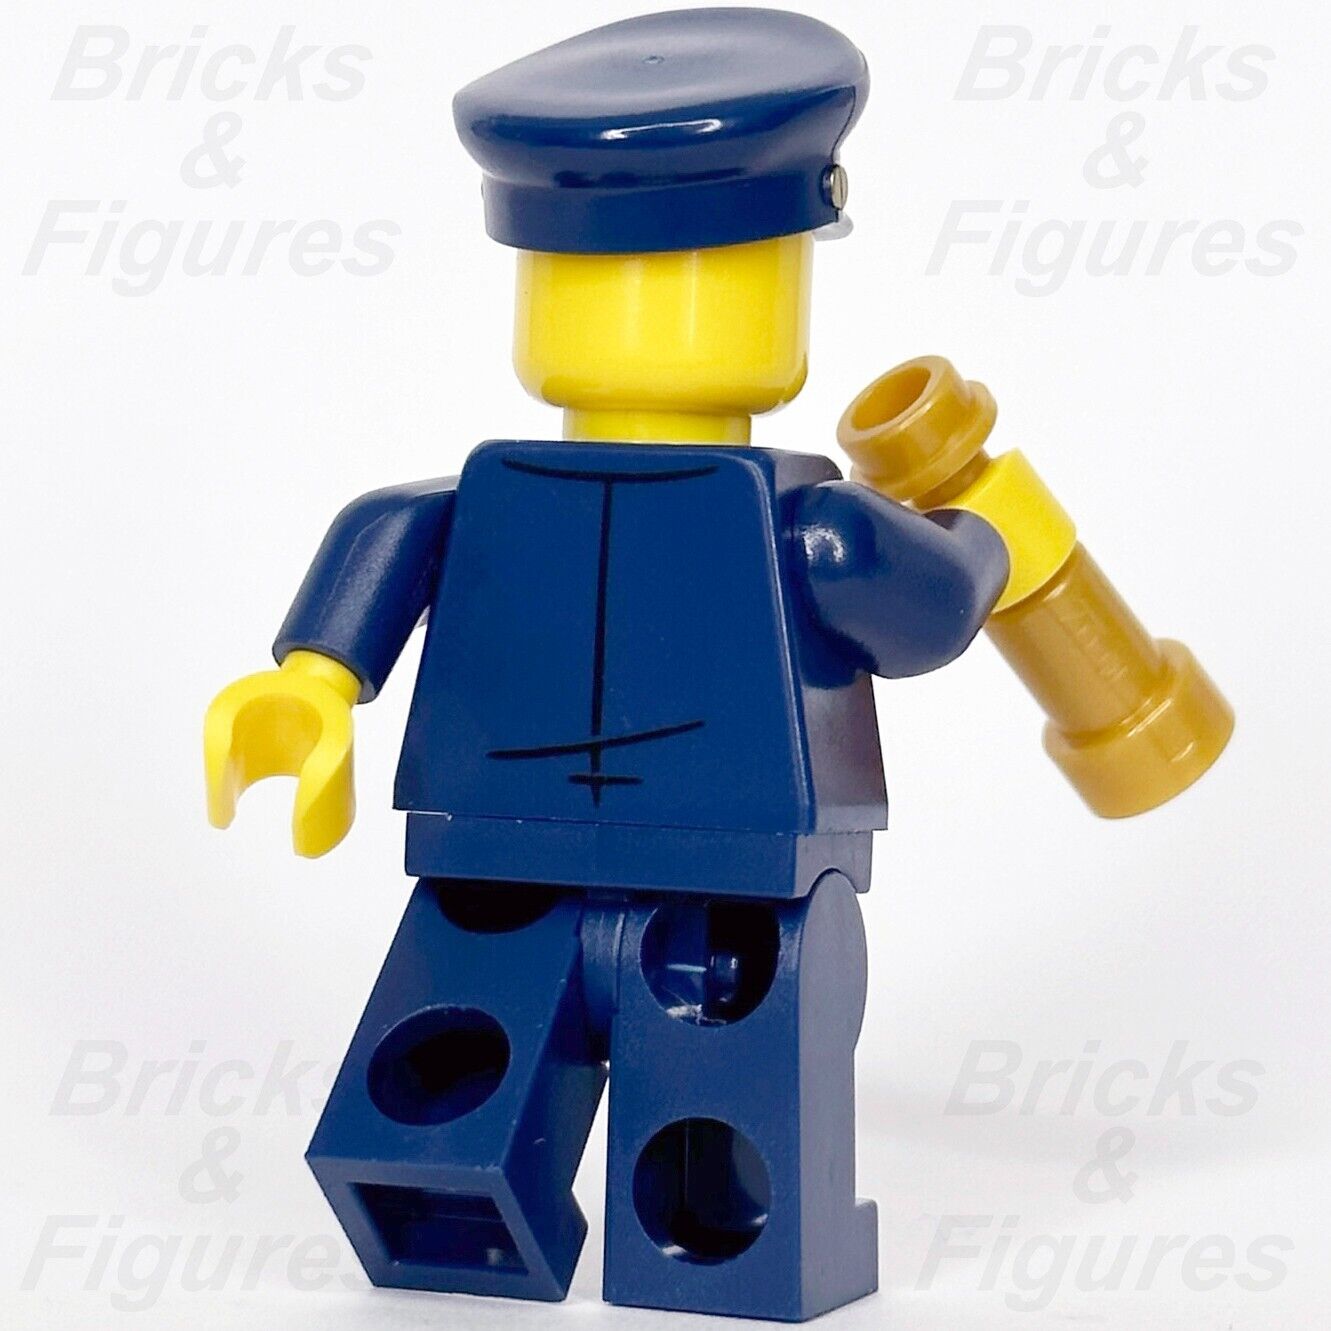 LEGO Ideas Lighthouse Keeper Minifigure CUUSOO Minifig 21335 idea123 - Bricks & Figures